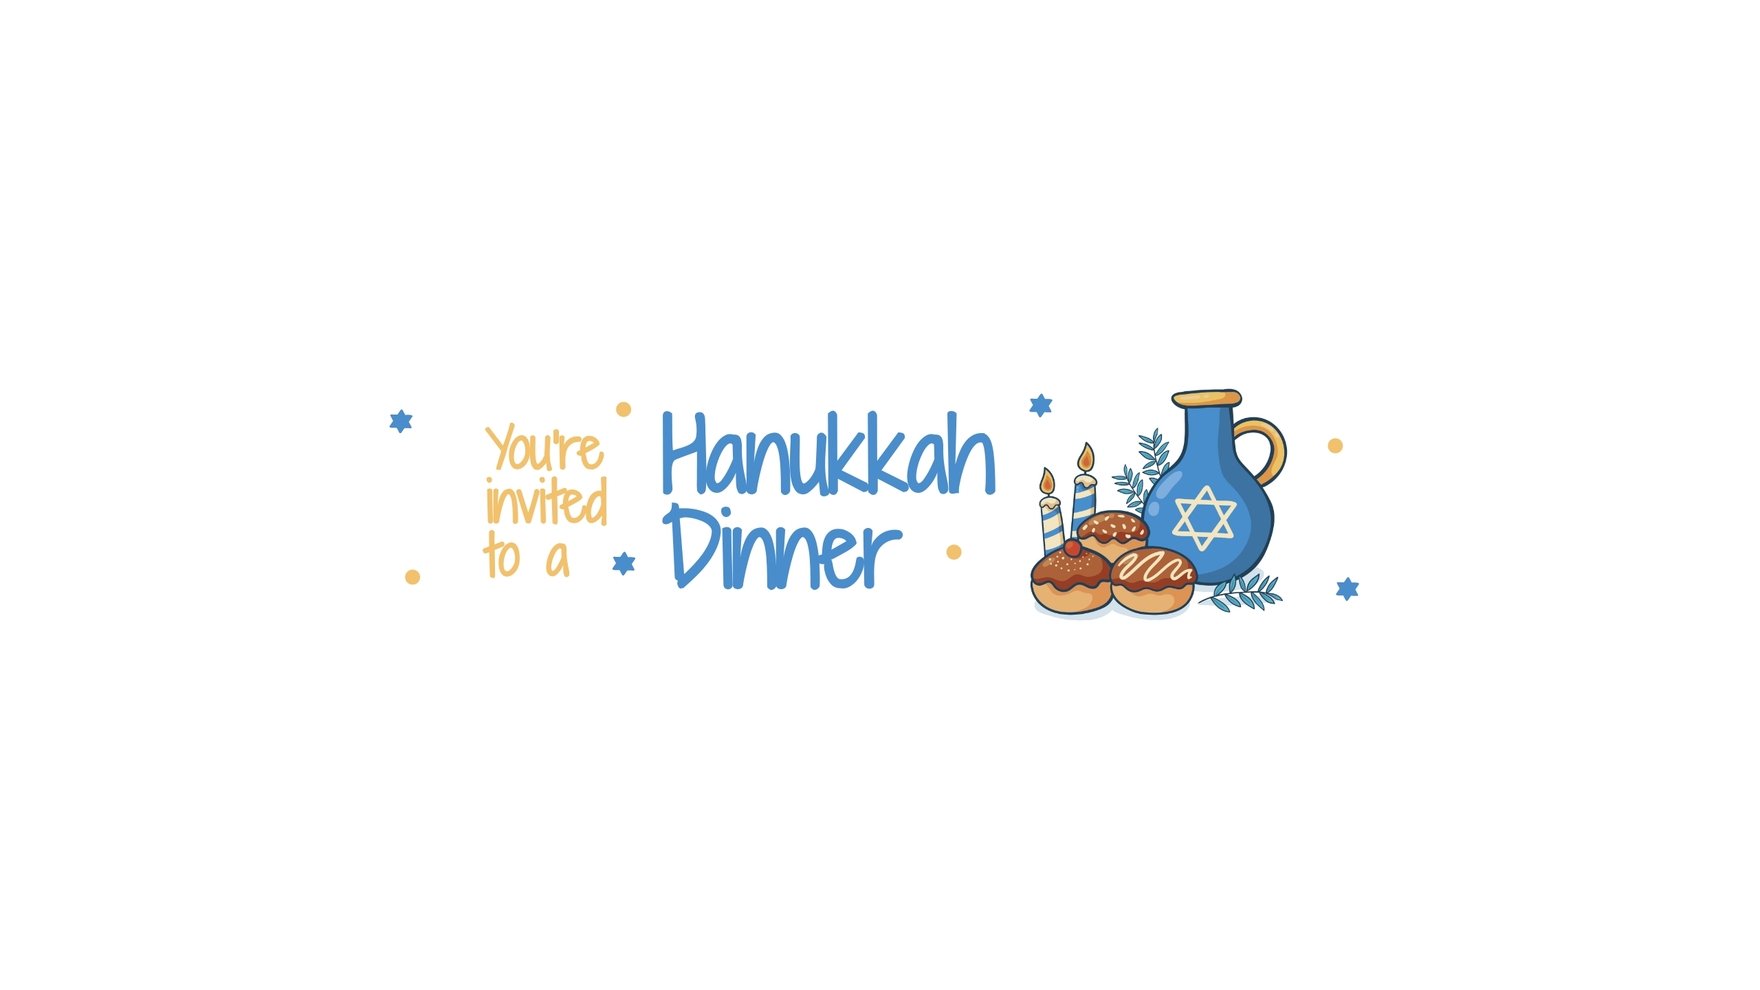 Hanukkah Dinner Youtube Banner Template